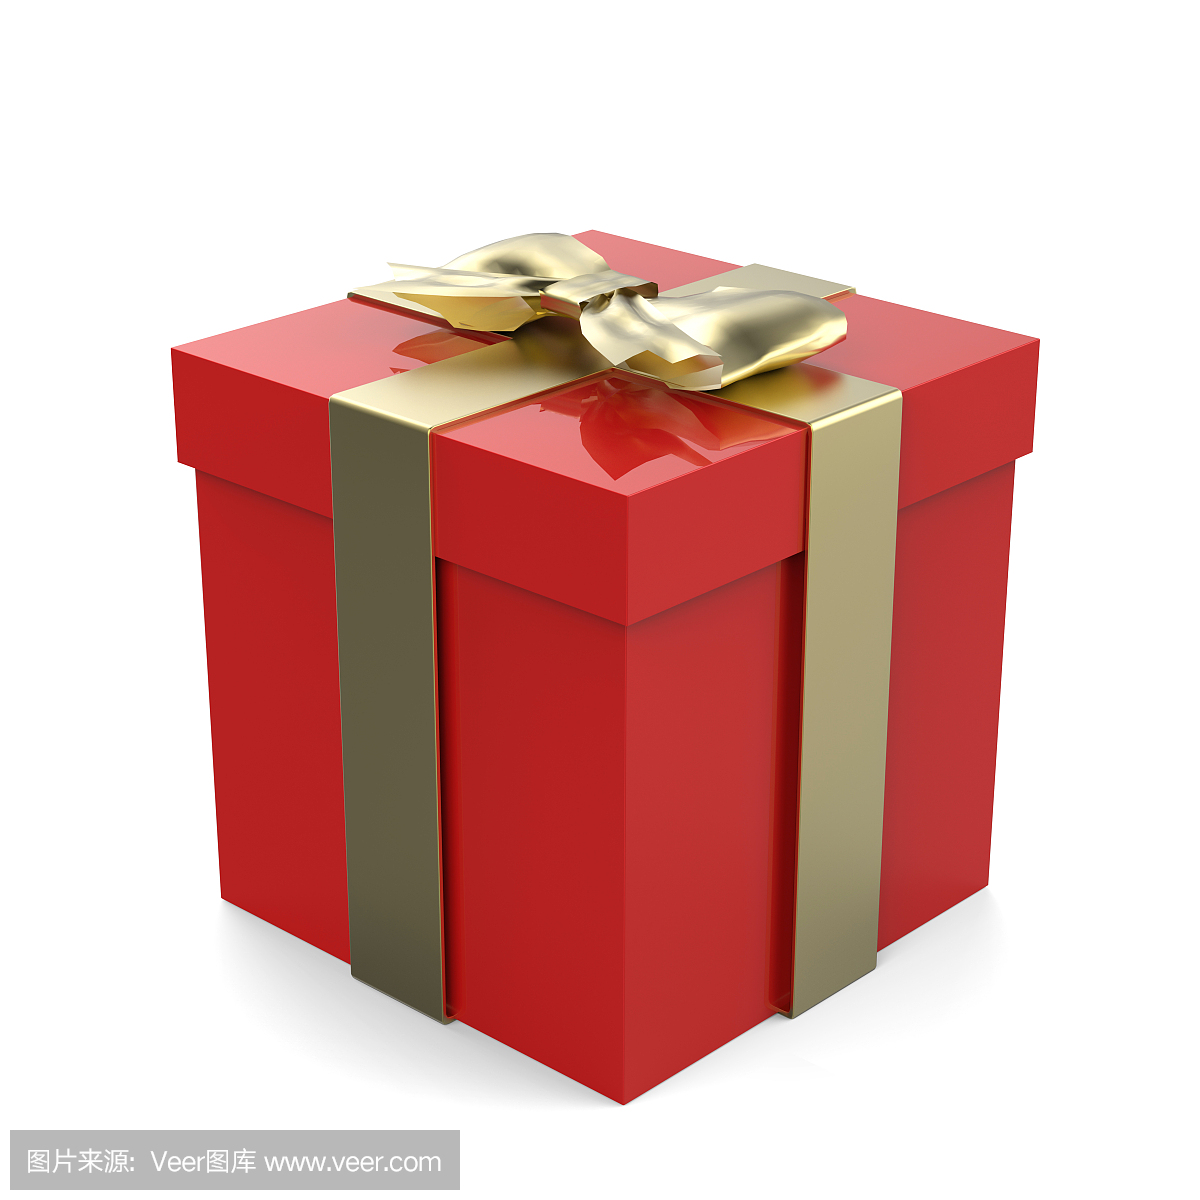 圣诞节礼物盒,有金黄丝带和金黄弓的红色箱子